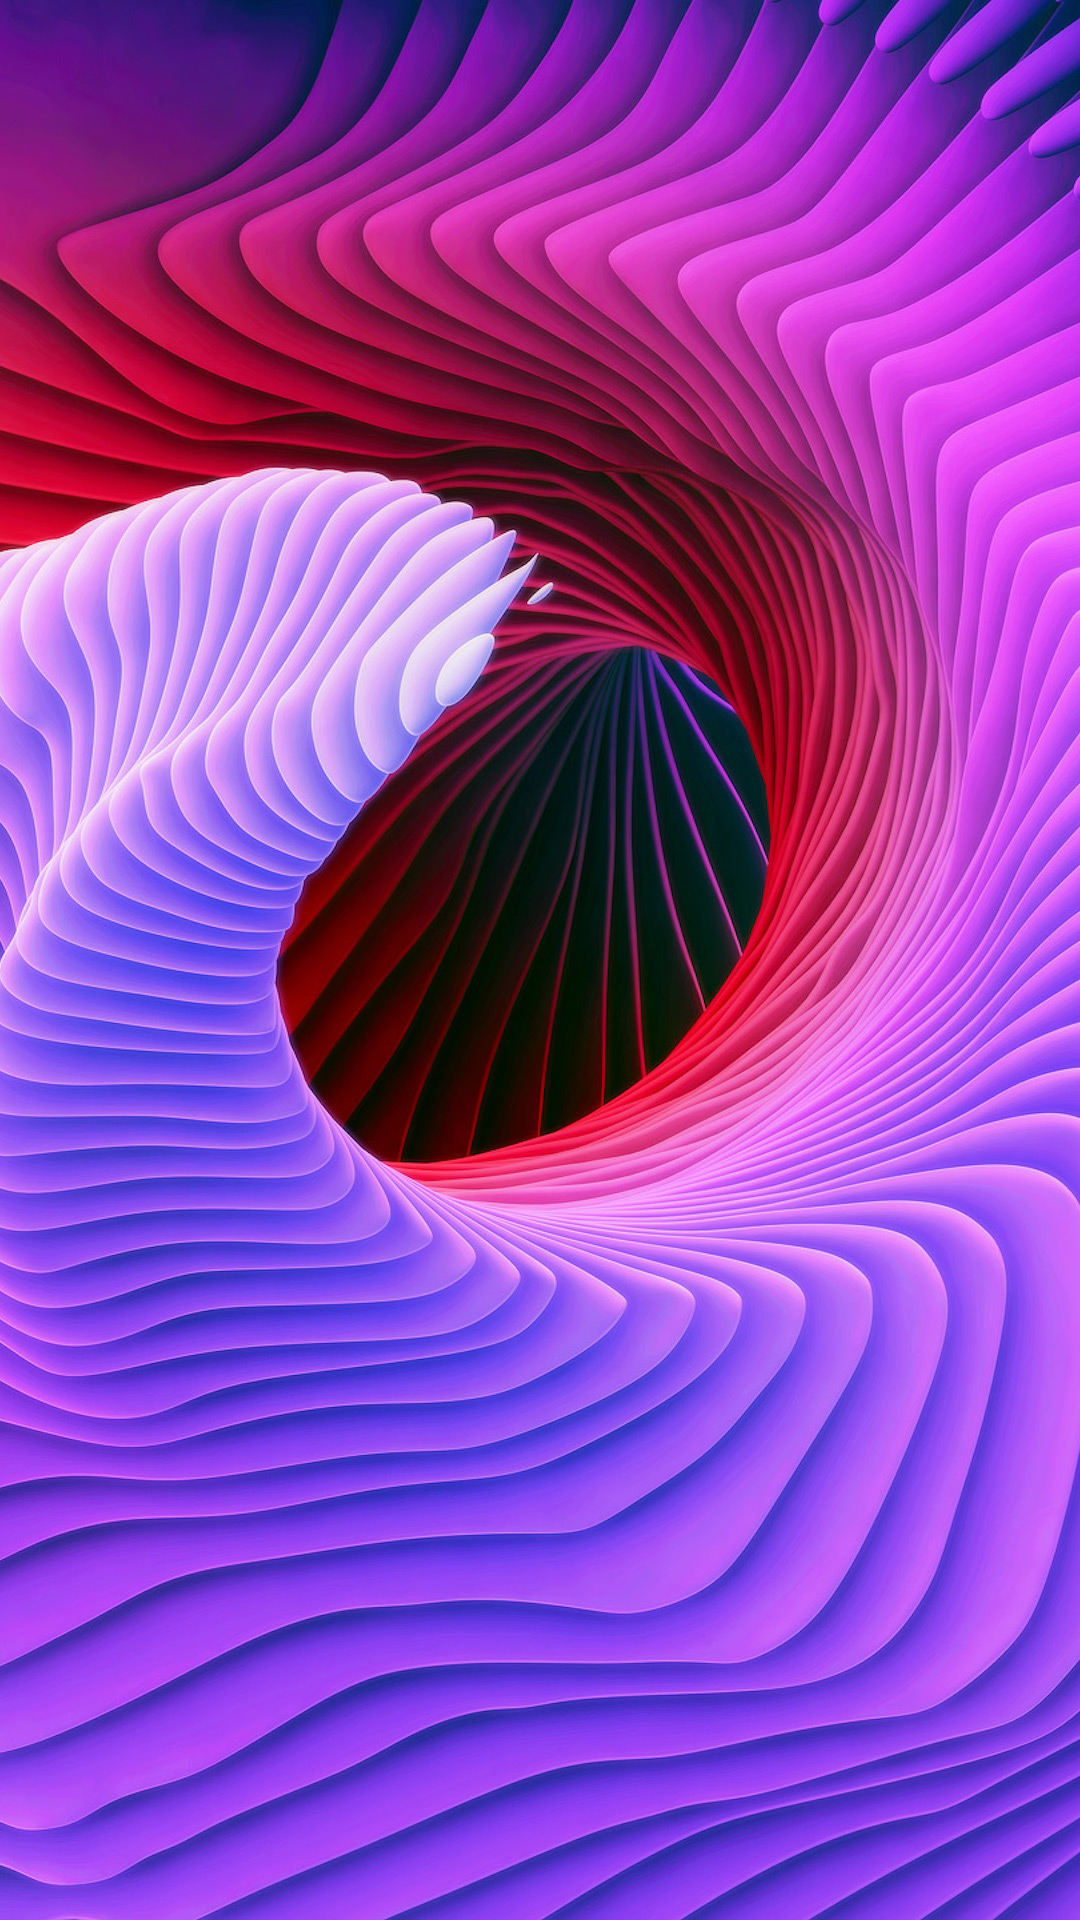 samsung wallpaper download,purple,violet,pink,magenta,fractal art